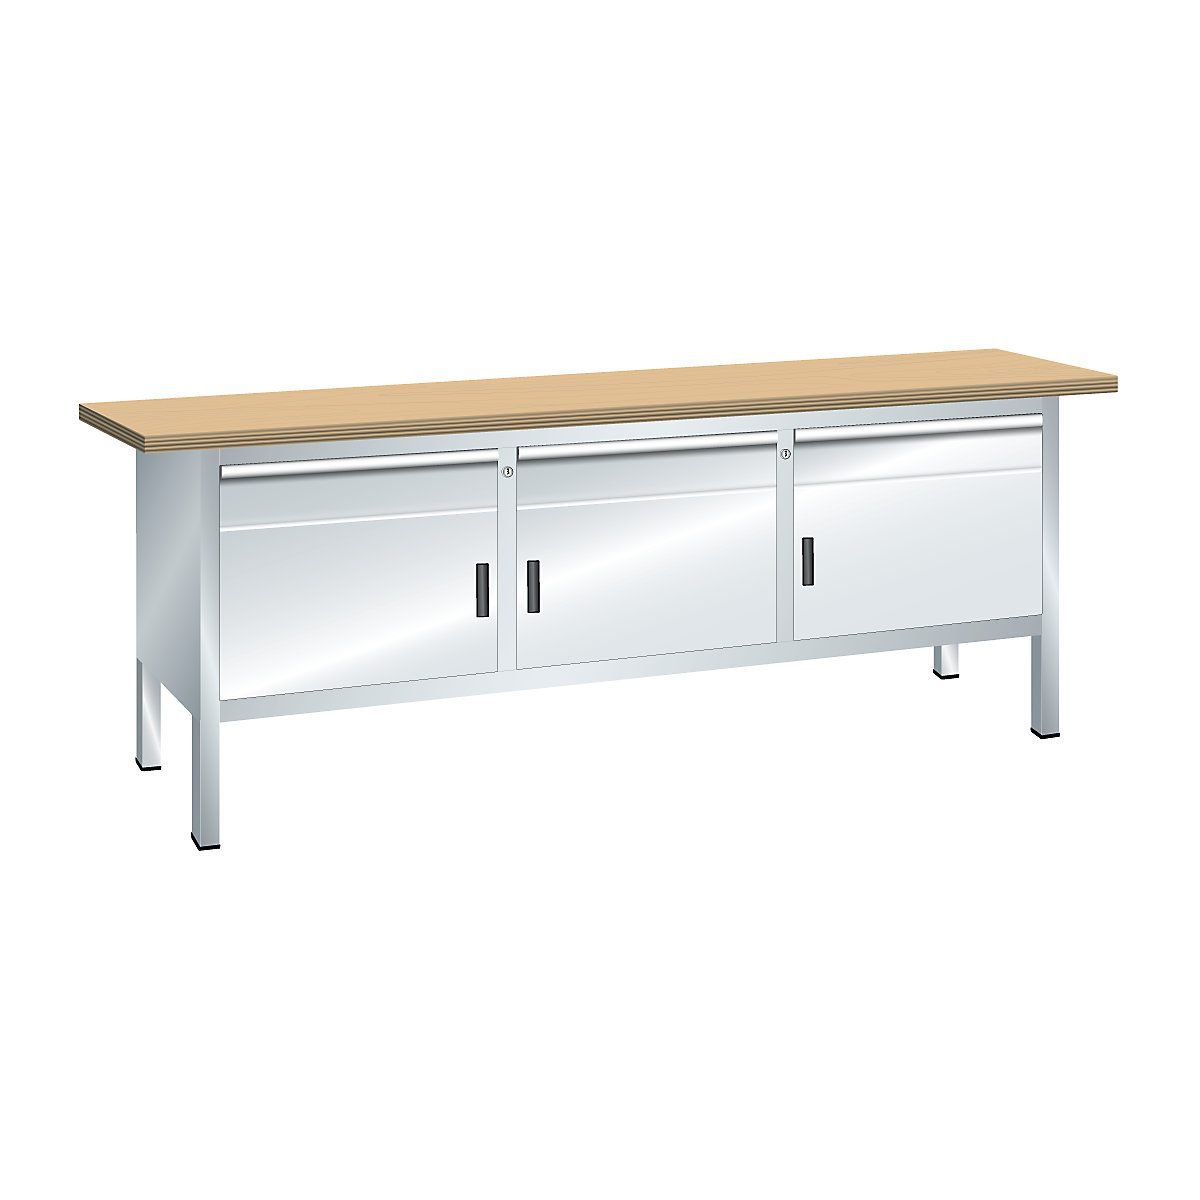 Stół warsztatowy z blatem z litego buku, konstrukcja ramowa – LISTA (Zdjęcie produktu 11)-10